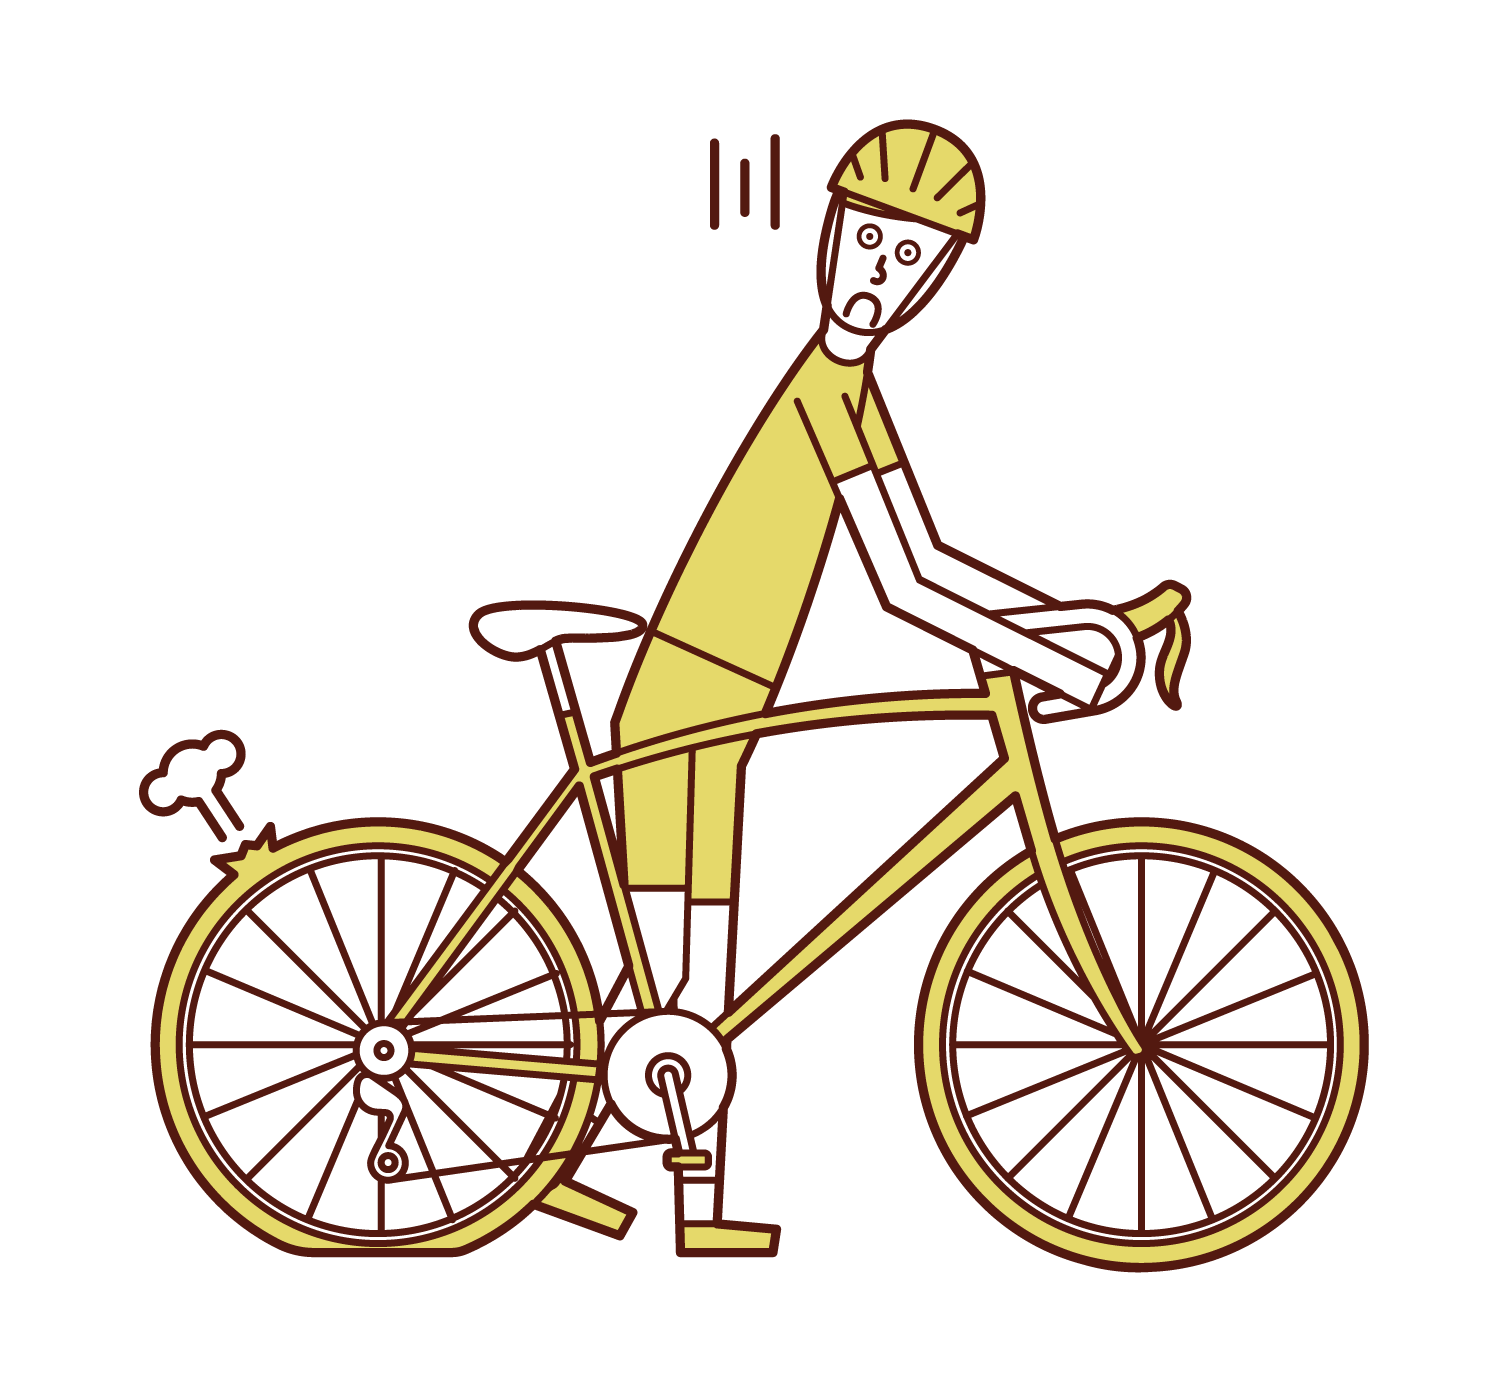 パンクした自転車を押す人 男性 のイラスト フリーイラスト素材 Kukukeke ククケケ